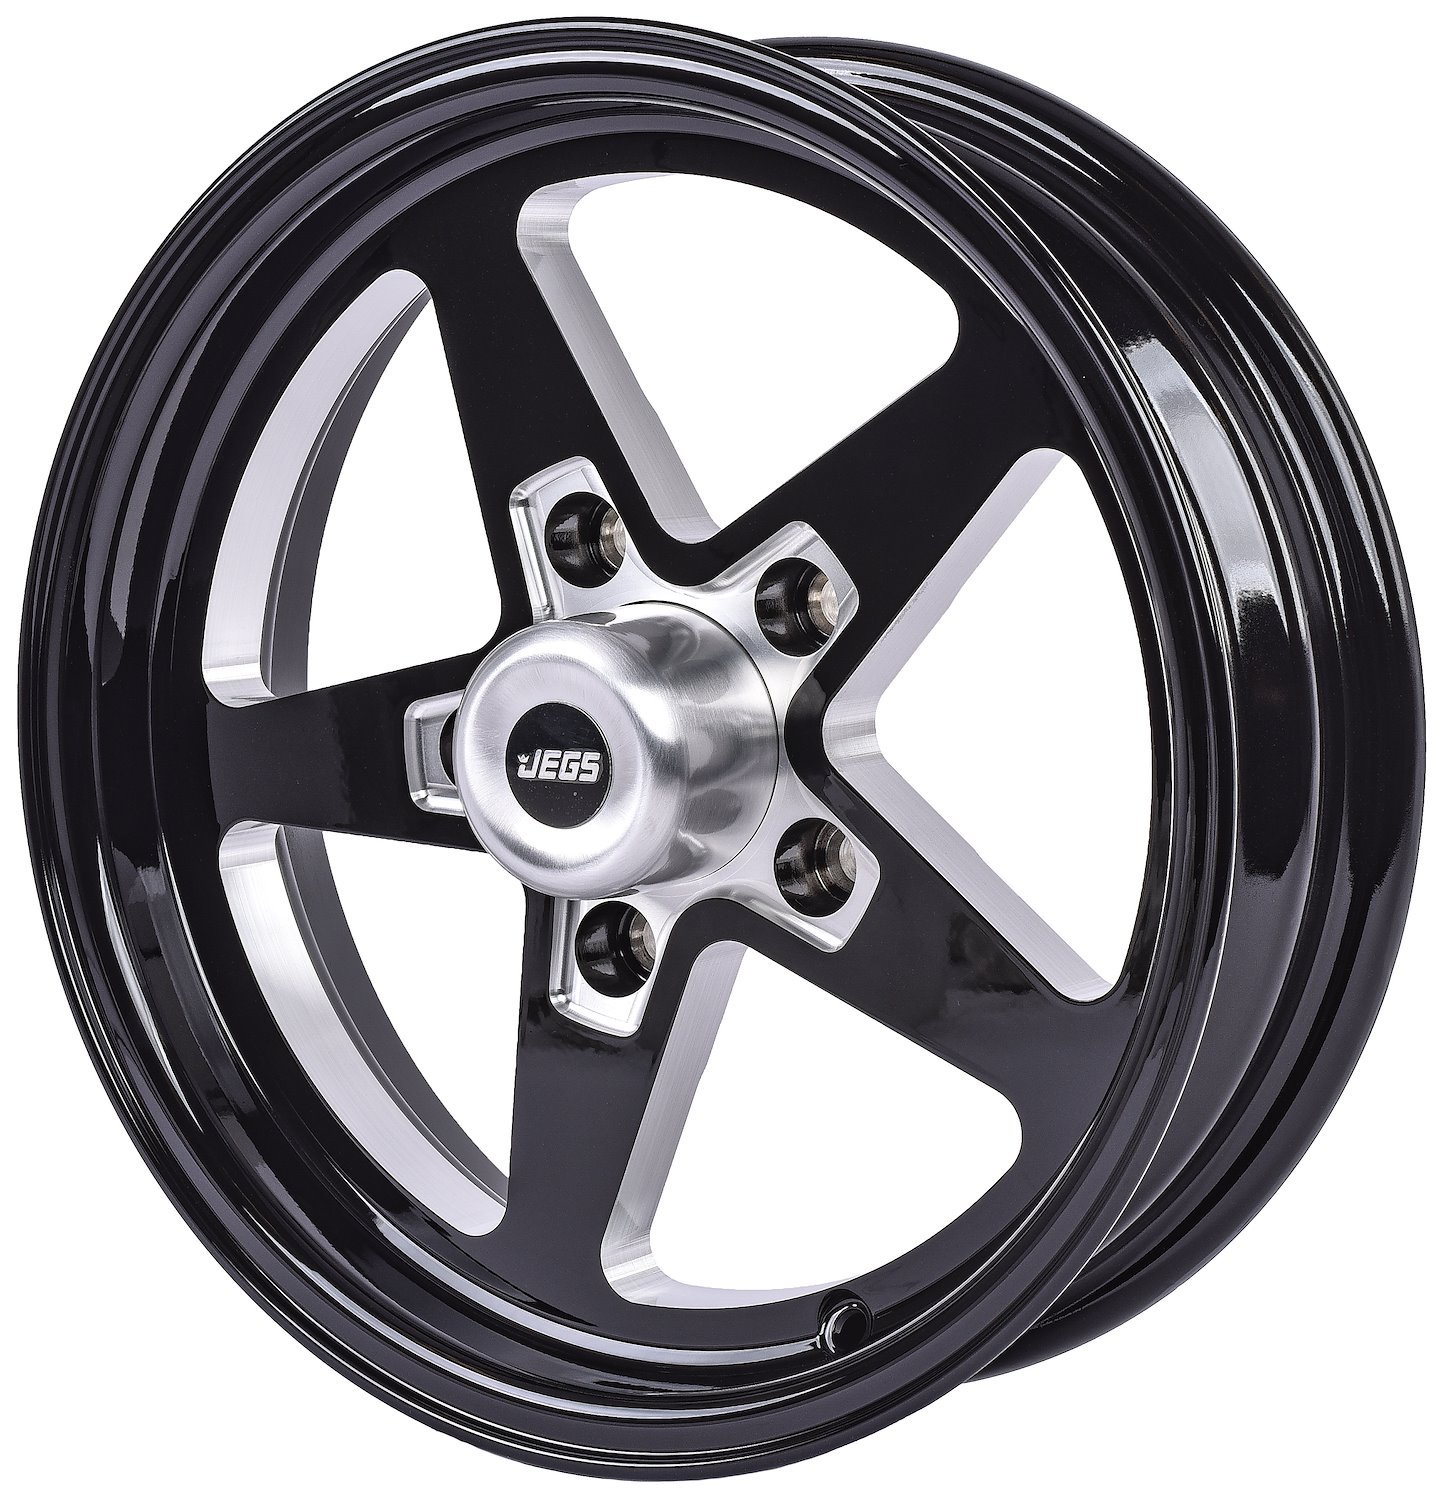 SSR Star Wheel [Size: 15" x 4"] Gloss Black